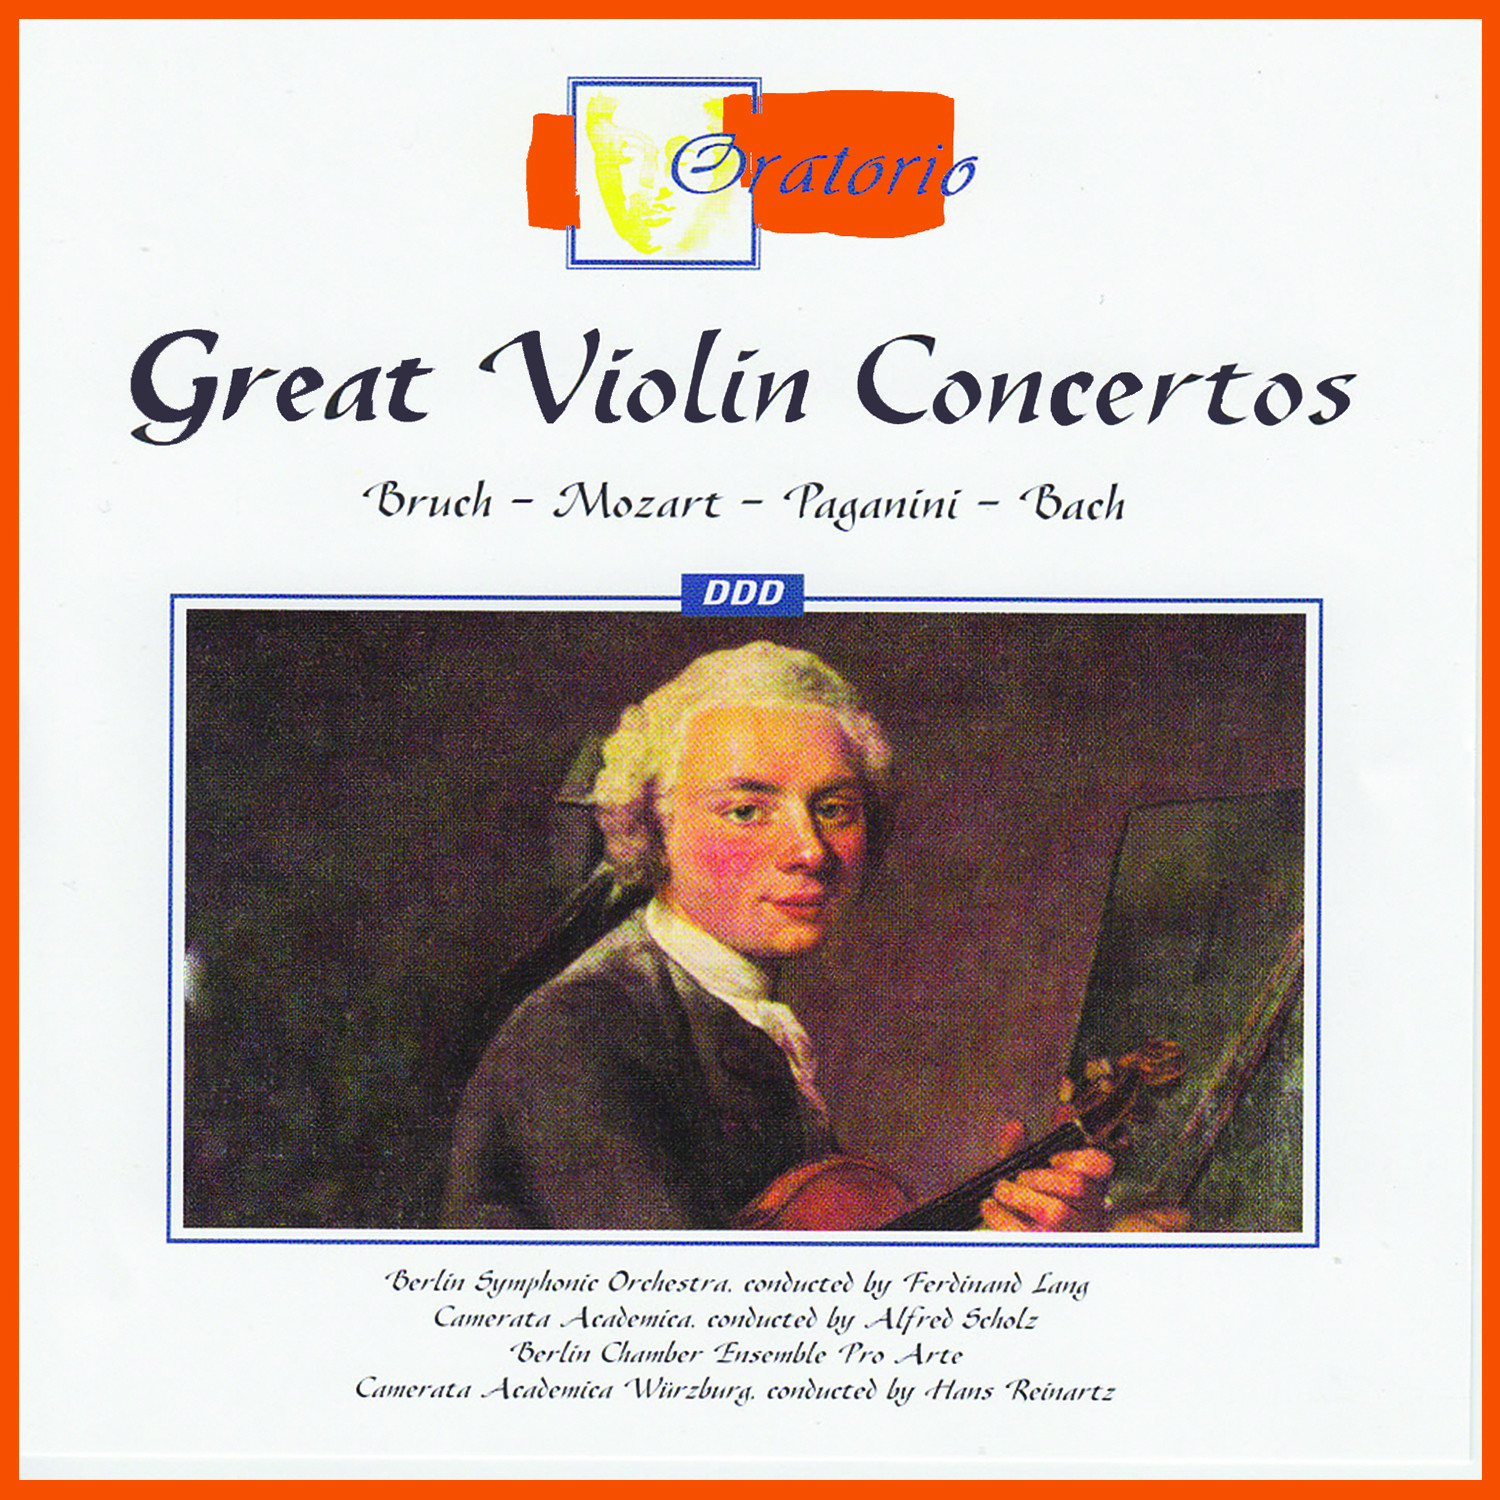 Concerto for Violin and Orchestra No. 1 in D Minor, Op. 6: Allegro maestoso